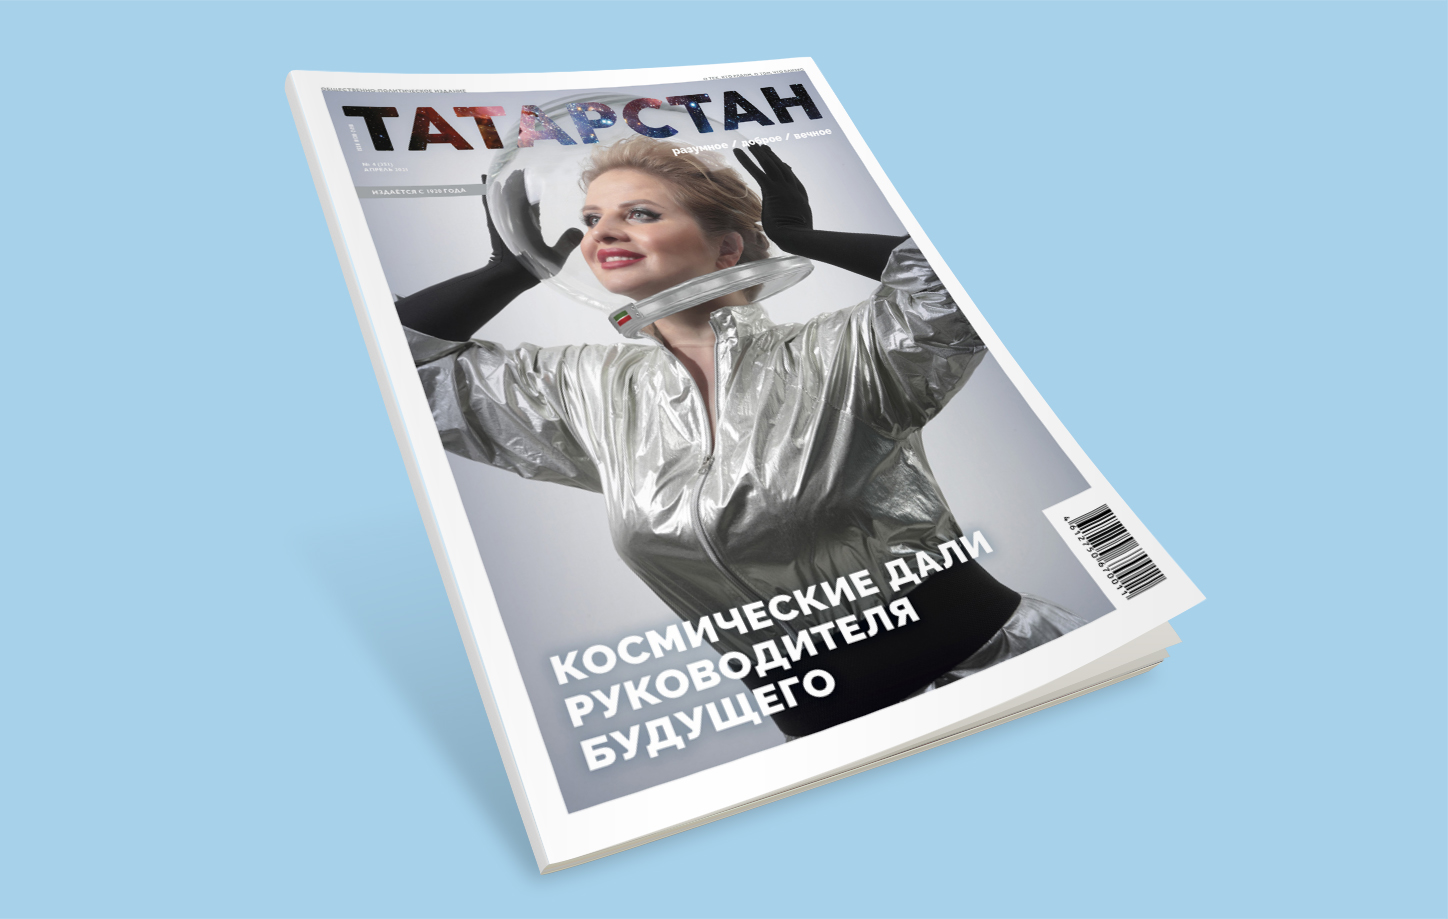 Читайте новый номер журнала "Татарстан"!